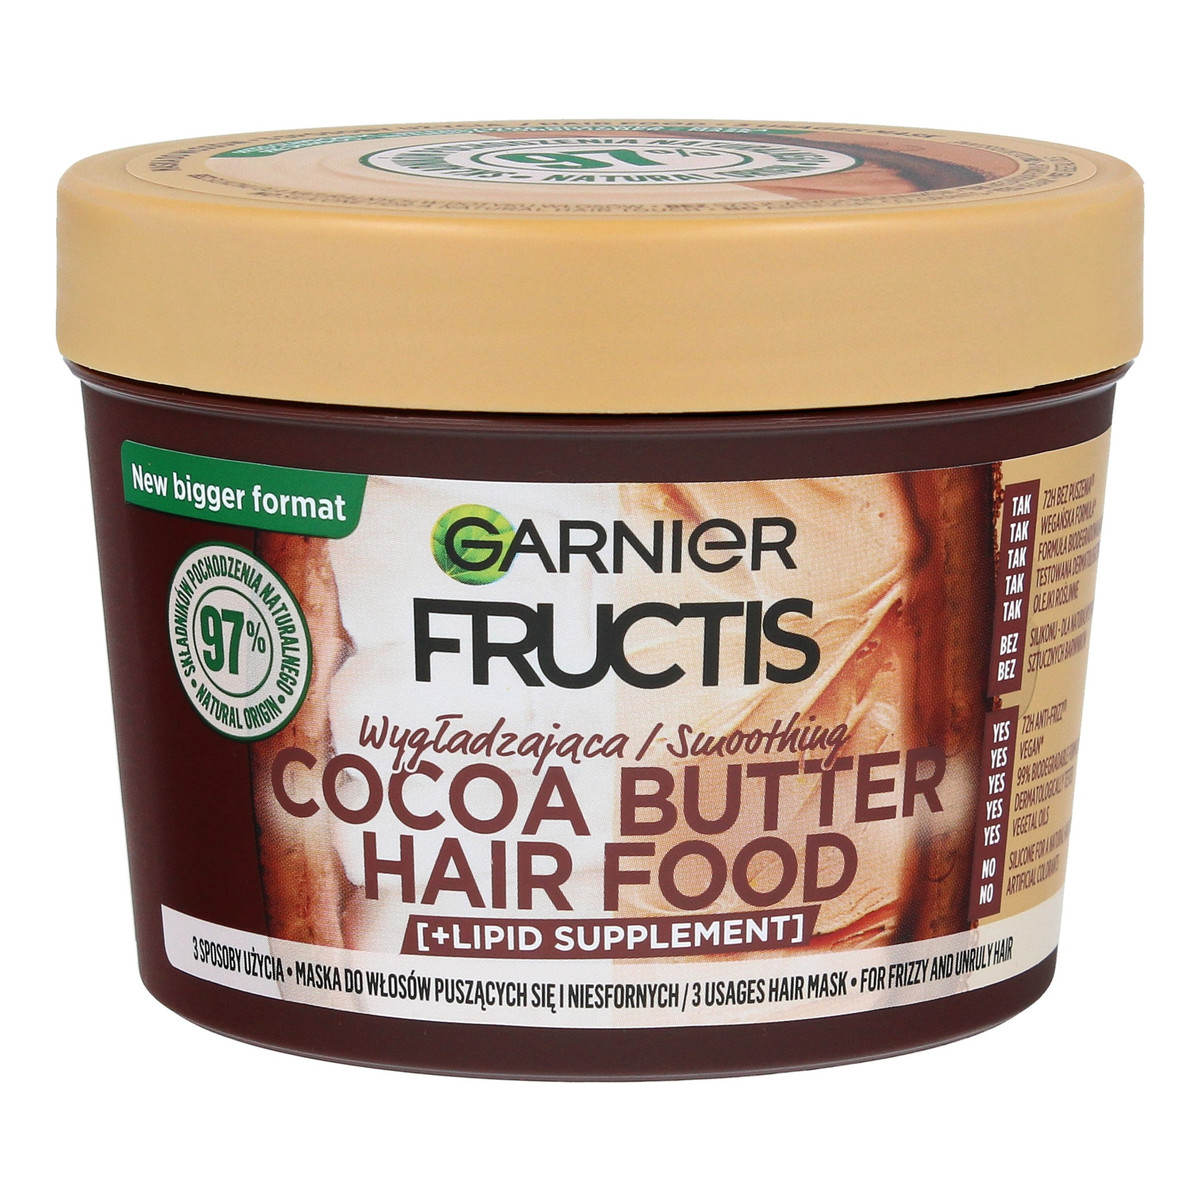 Garnier Fructis Hair Food Maska wygładzająca do włosów puszących się i niesfornych - Cocoa Butter 400ml